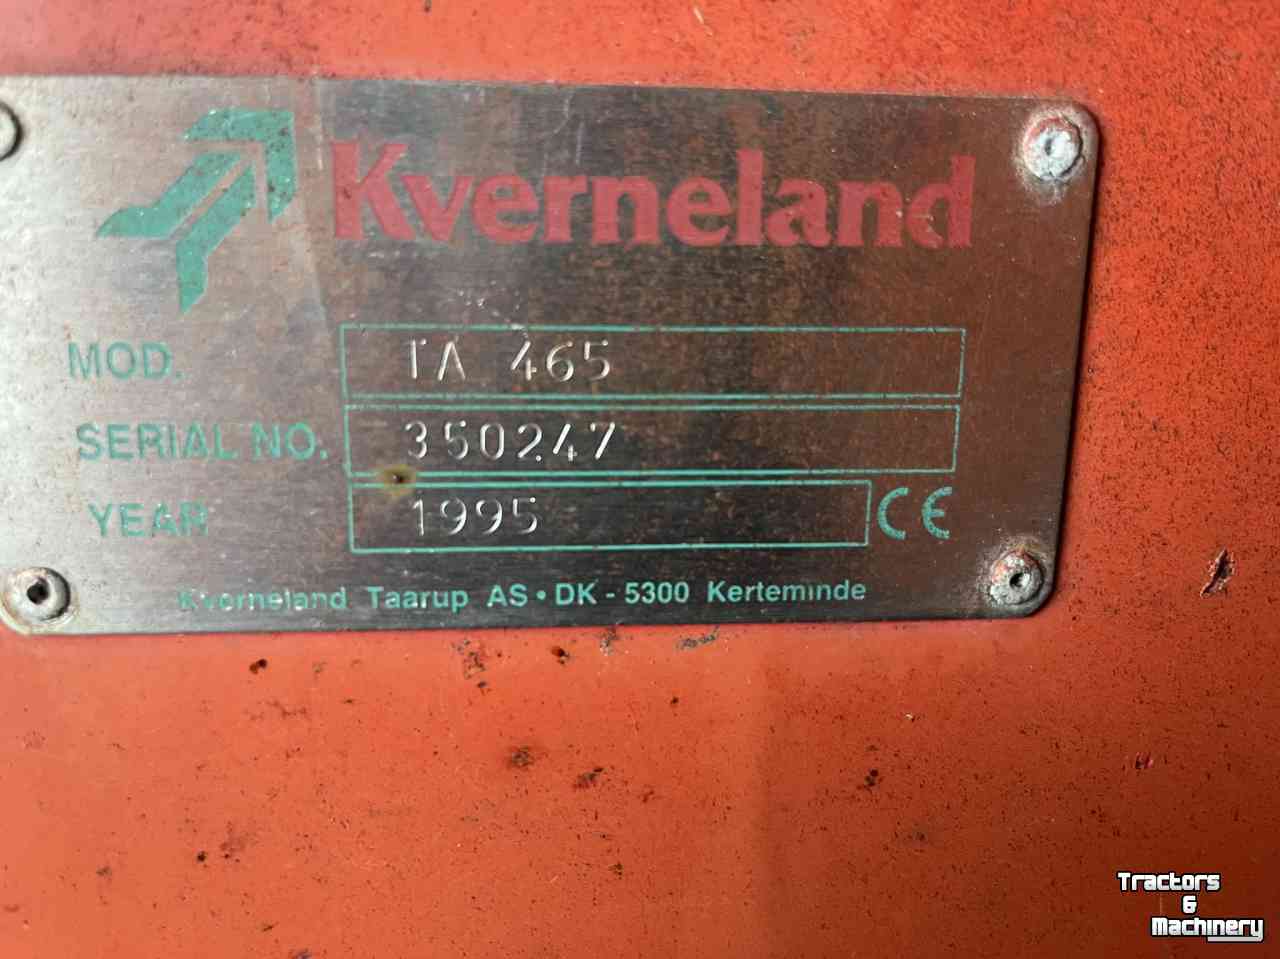 Lade- und Dosierwagen Kverneland TA 465